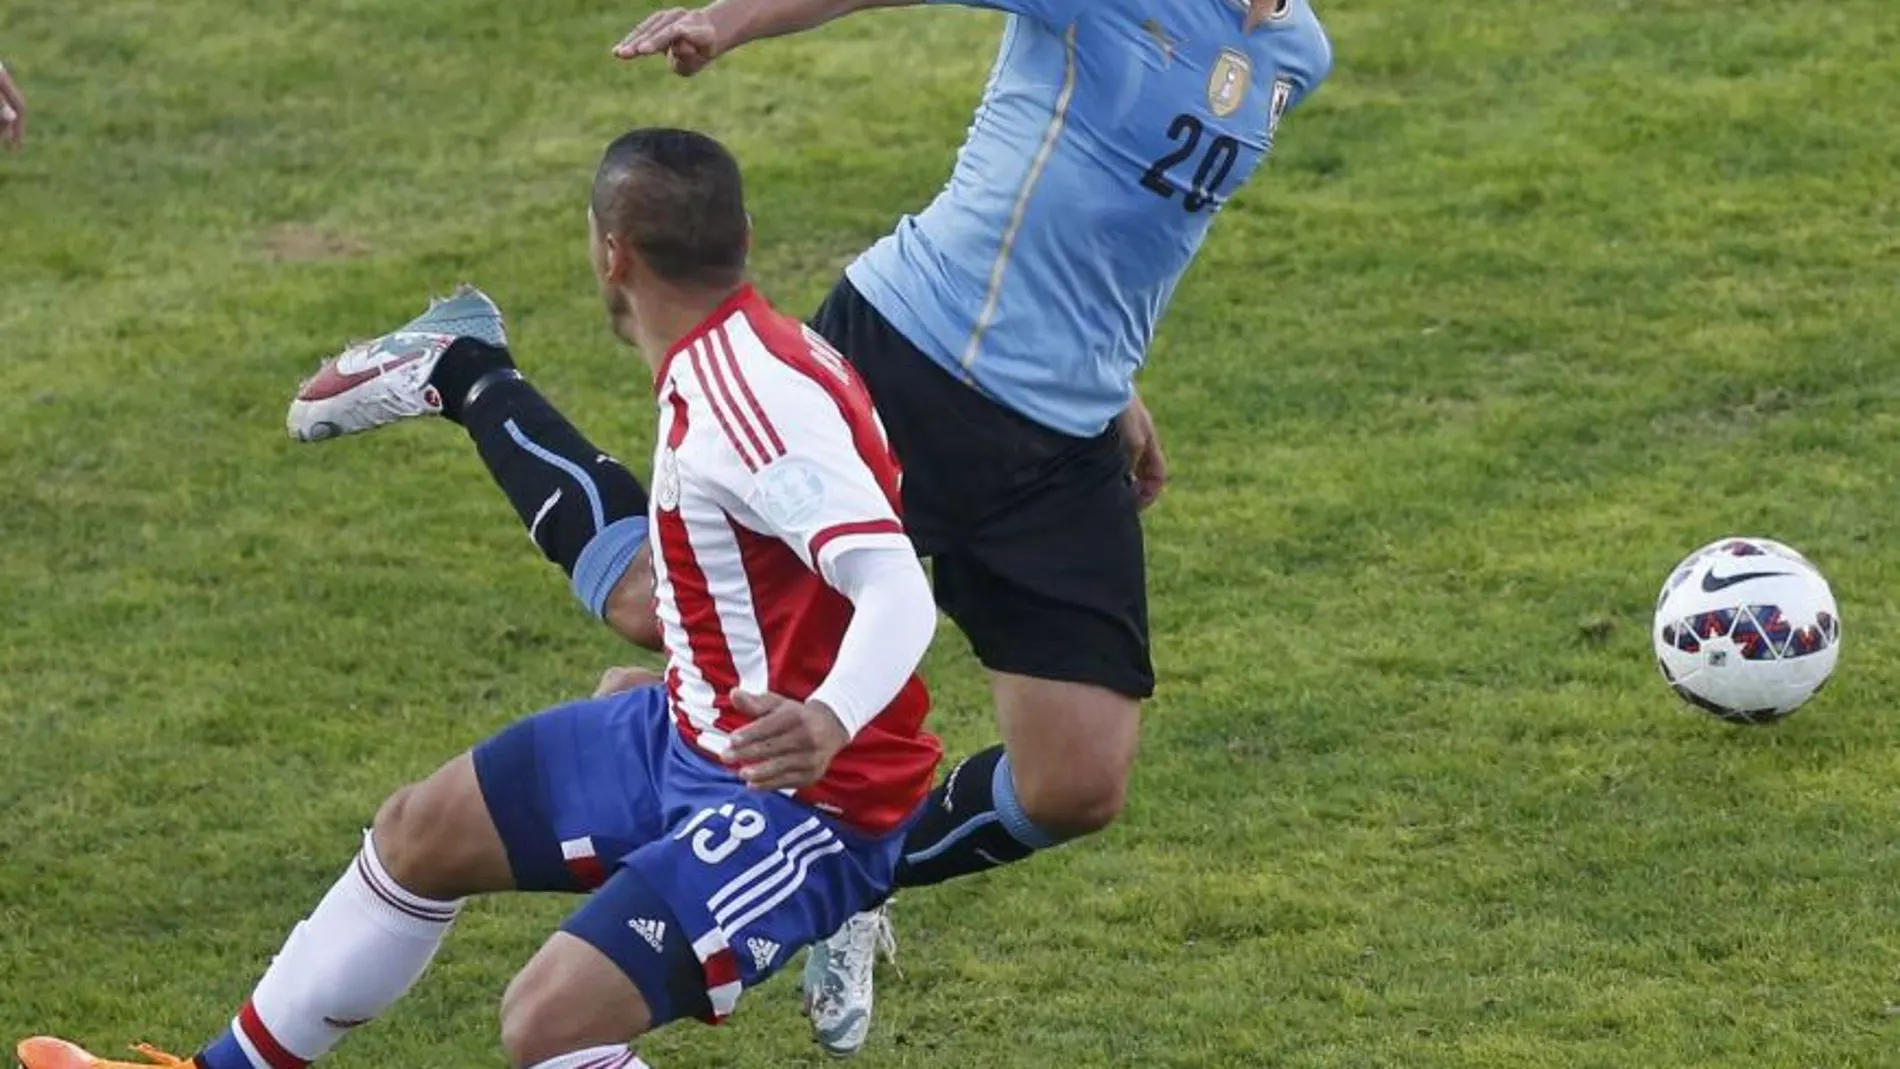 El jugador de Paraguay, Richard Ortiz, hace falta al jugador de Uruguay, Alvaro Gonzalez (20)